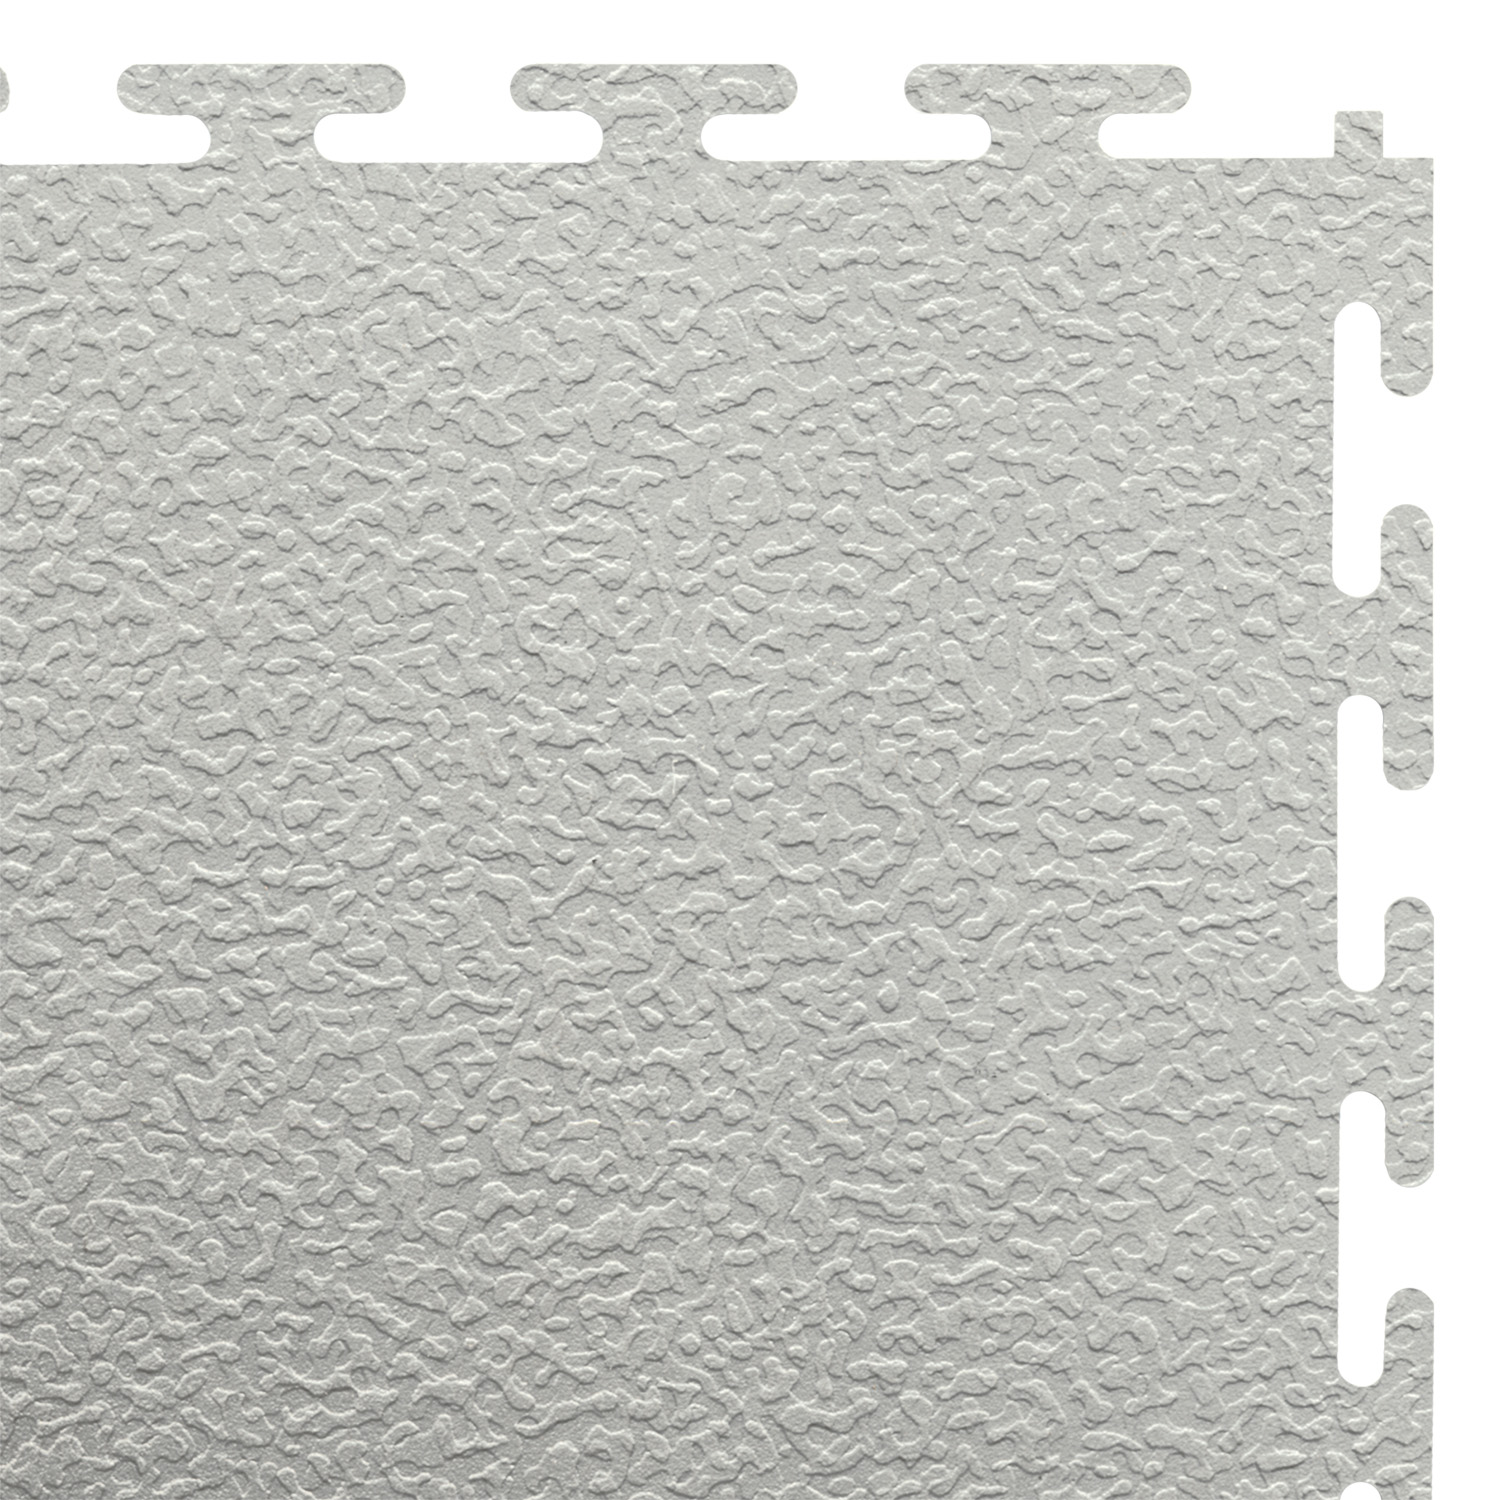 Standard floor tile (light grey/textured)